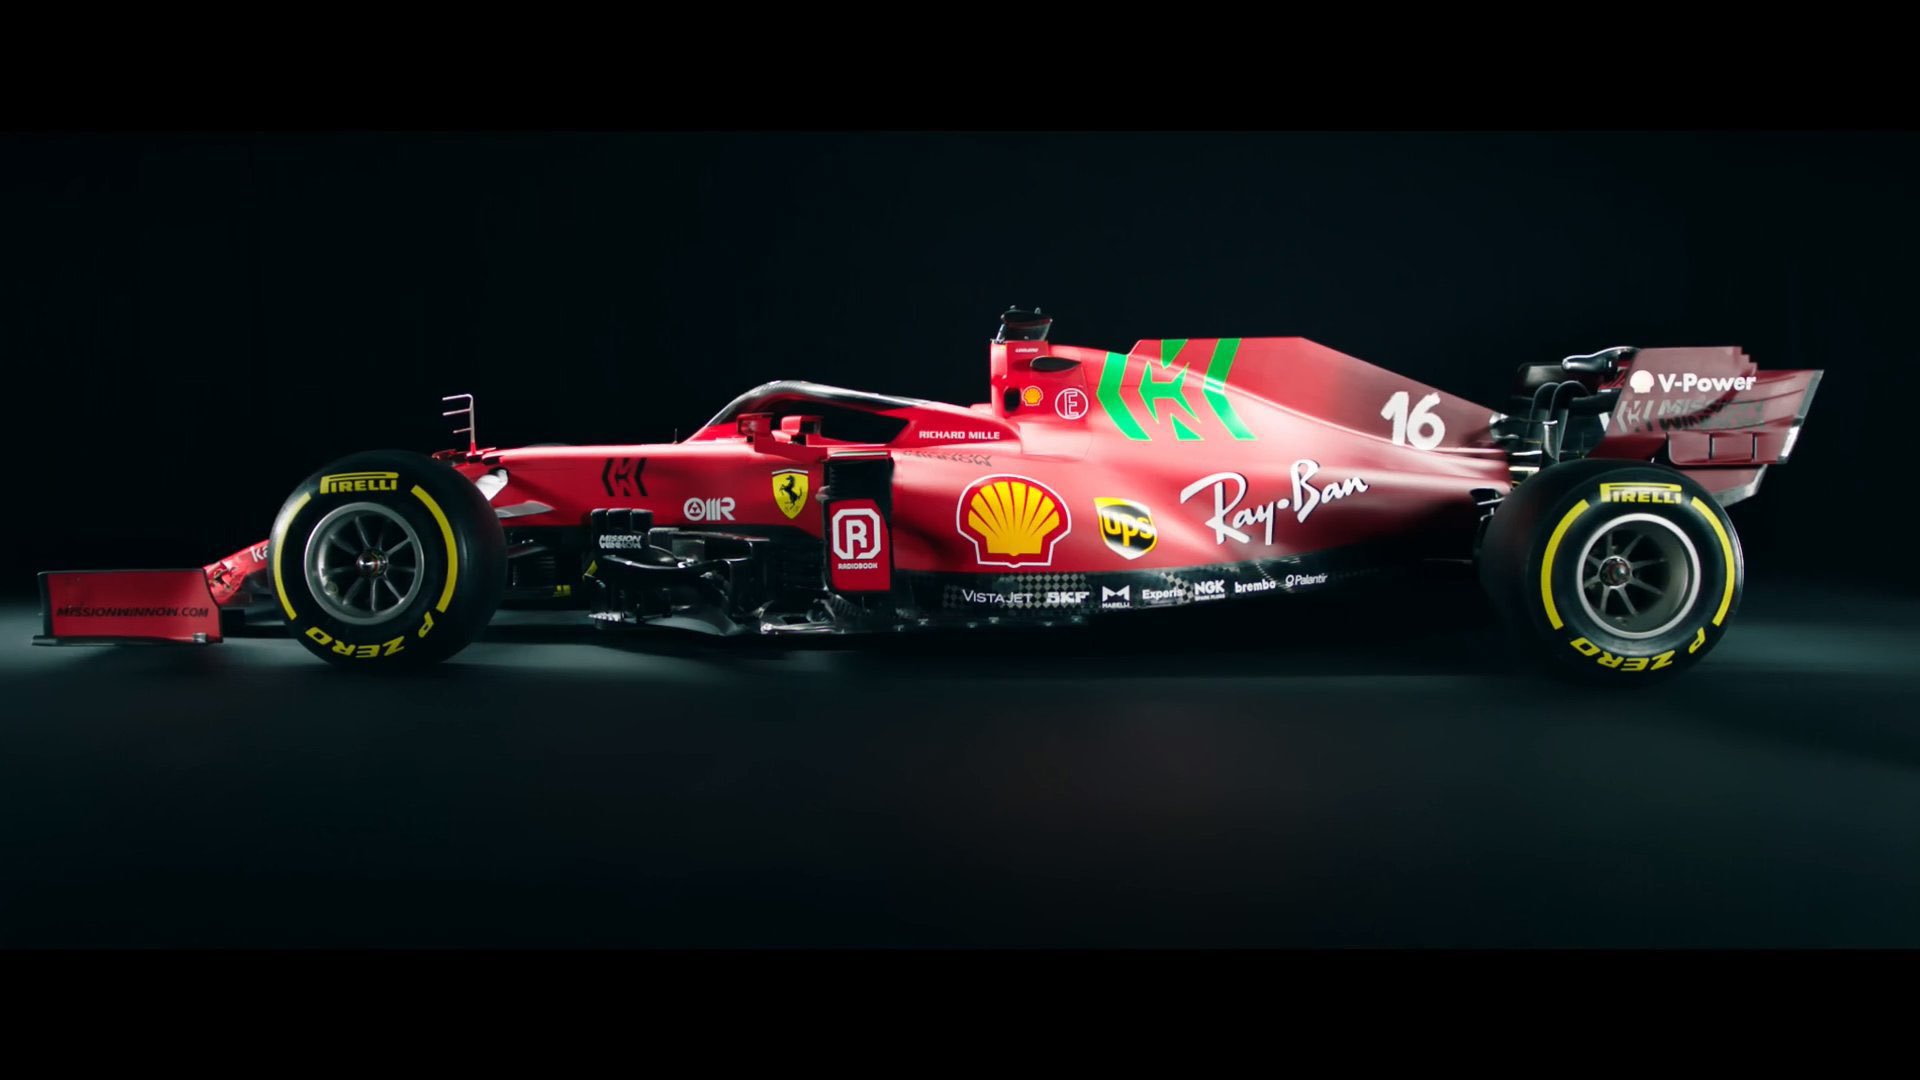 In Pictures Ferrari Reveals Sf21 Car